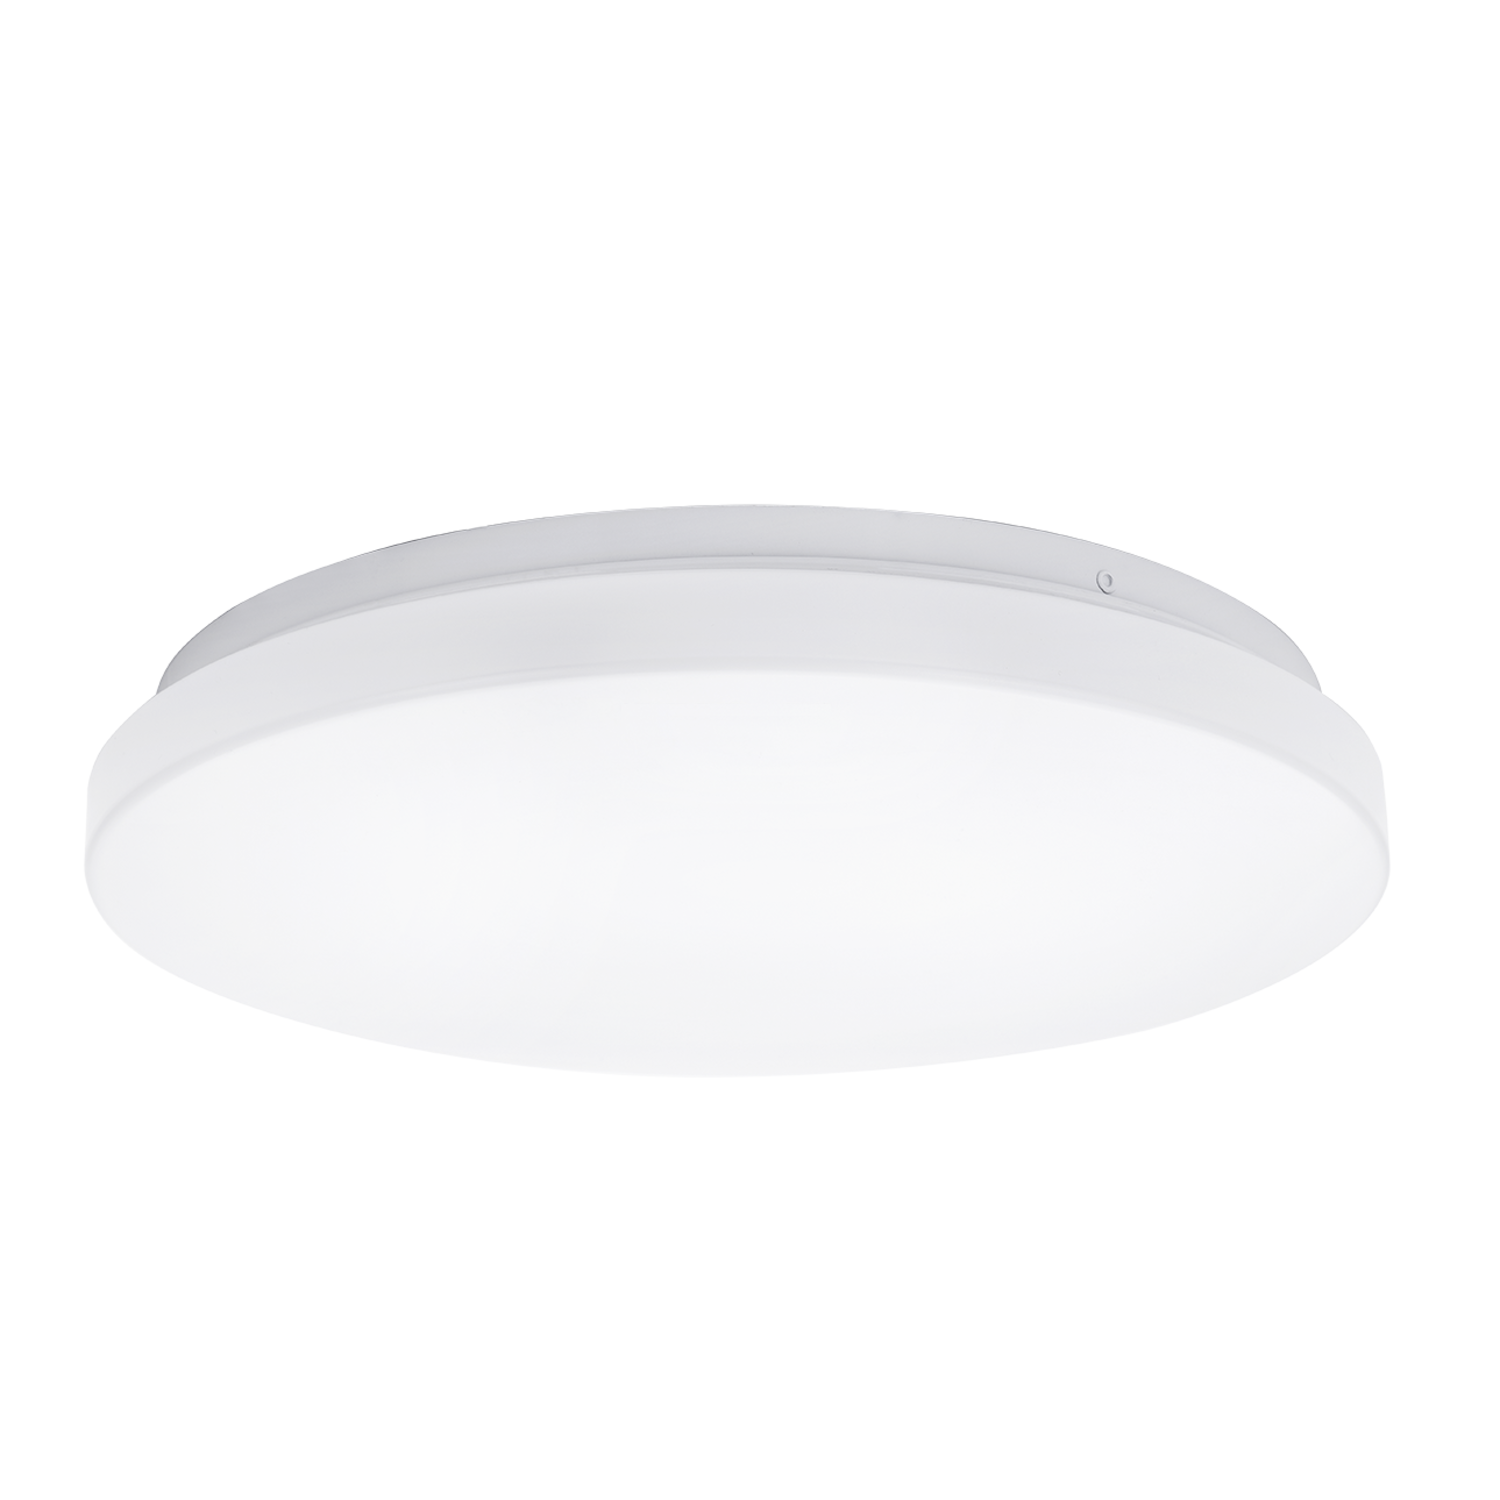 Speciaal Compatibel met Misverstand LED Witte plafondlamp rond- 12W vervangt 60W - Helder wit licht 4000K -  Ledlichtdiscounter.nl